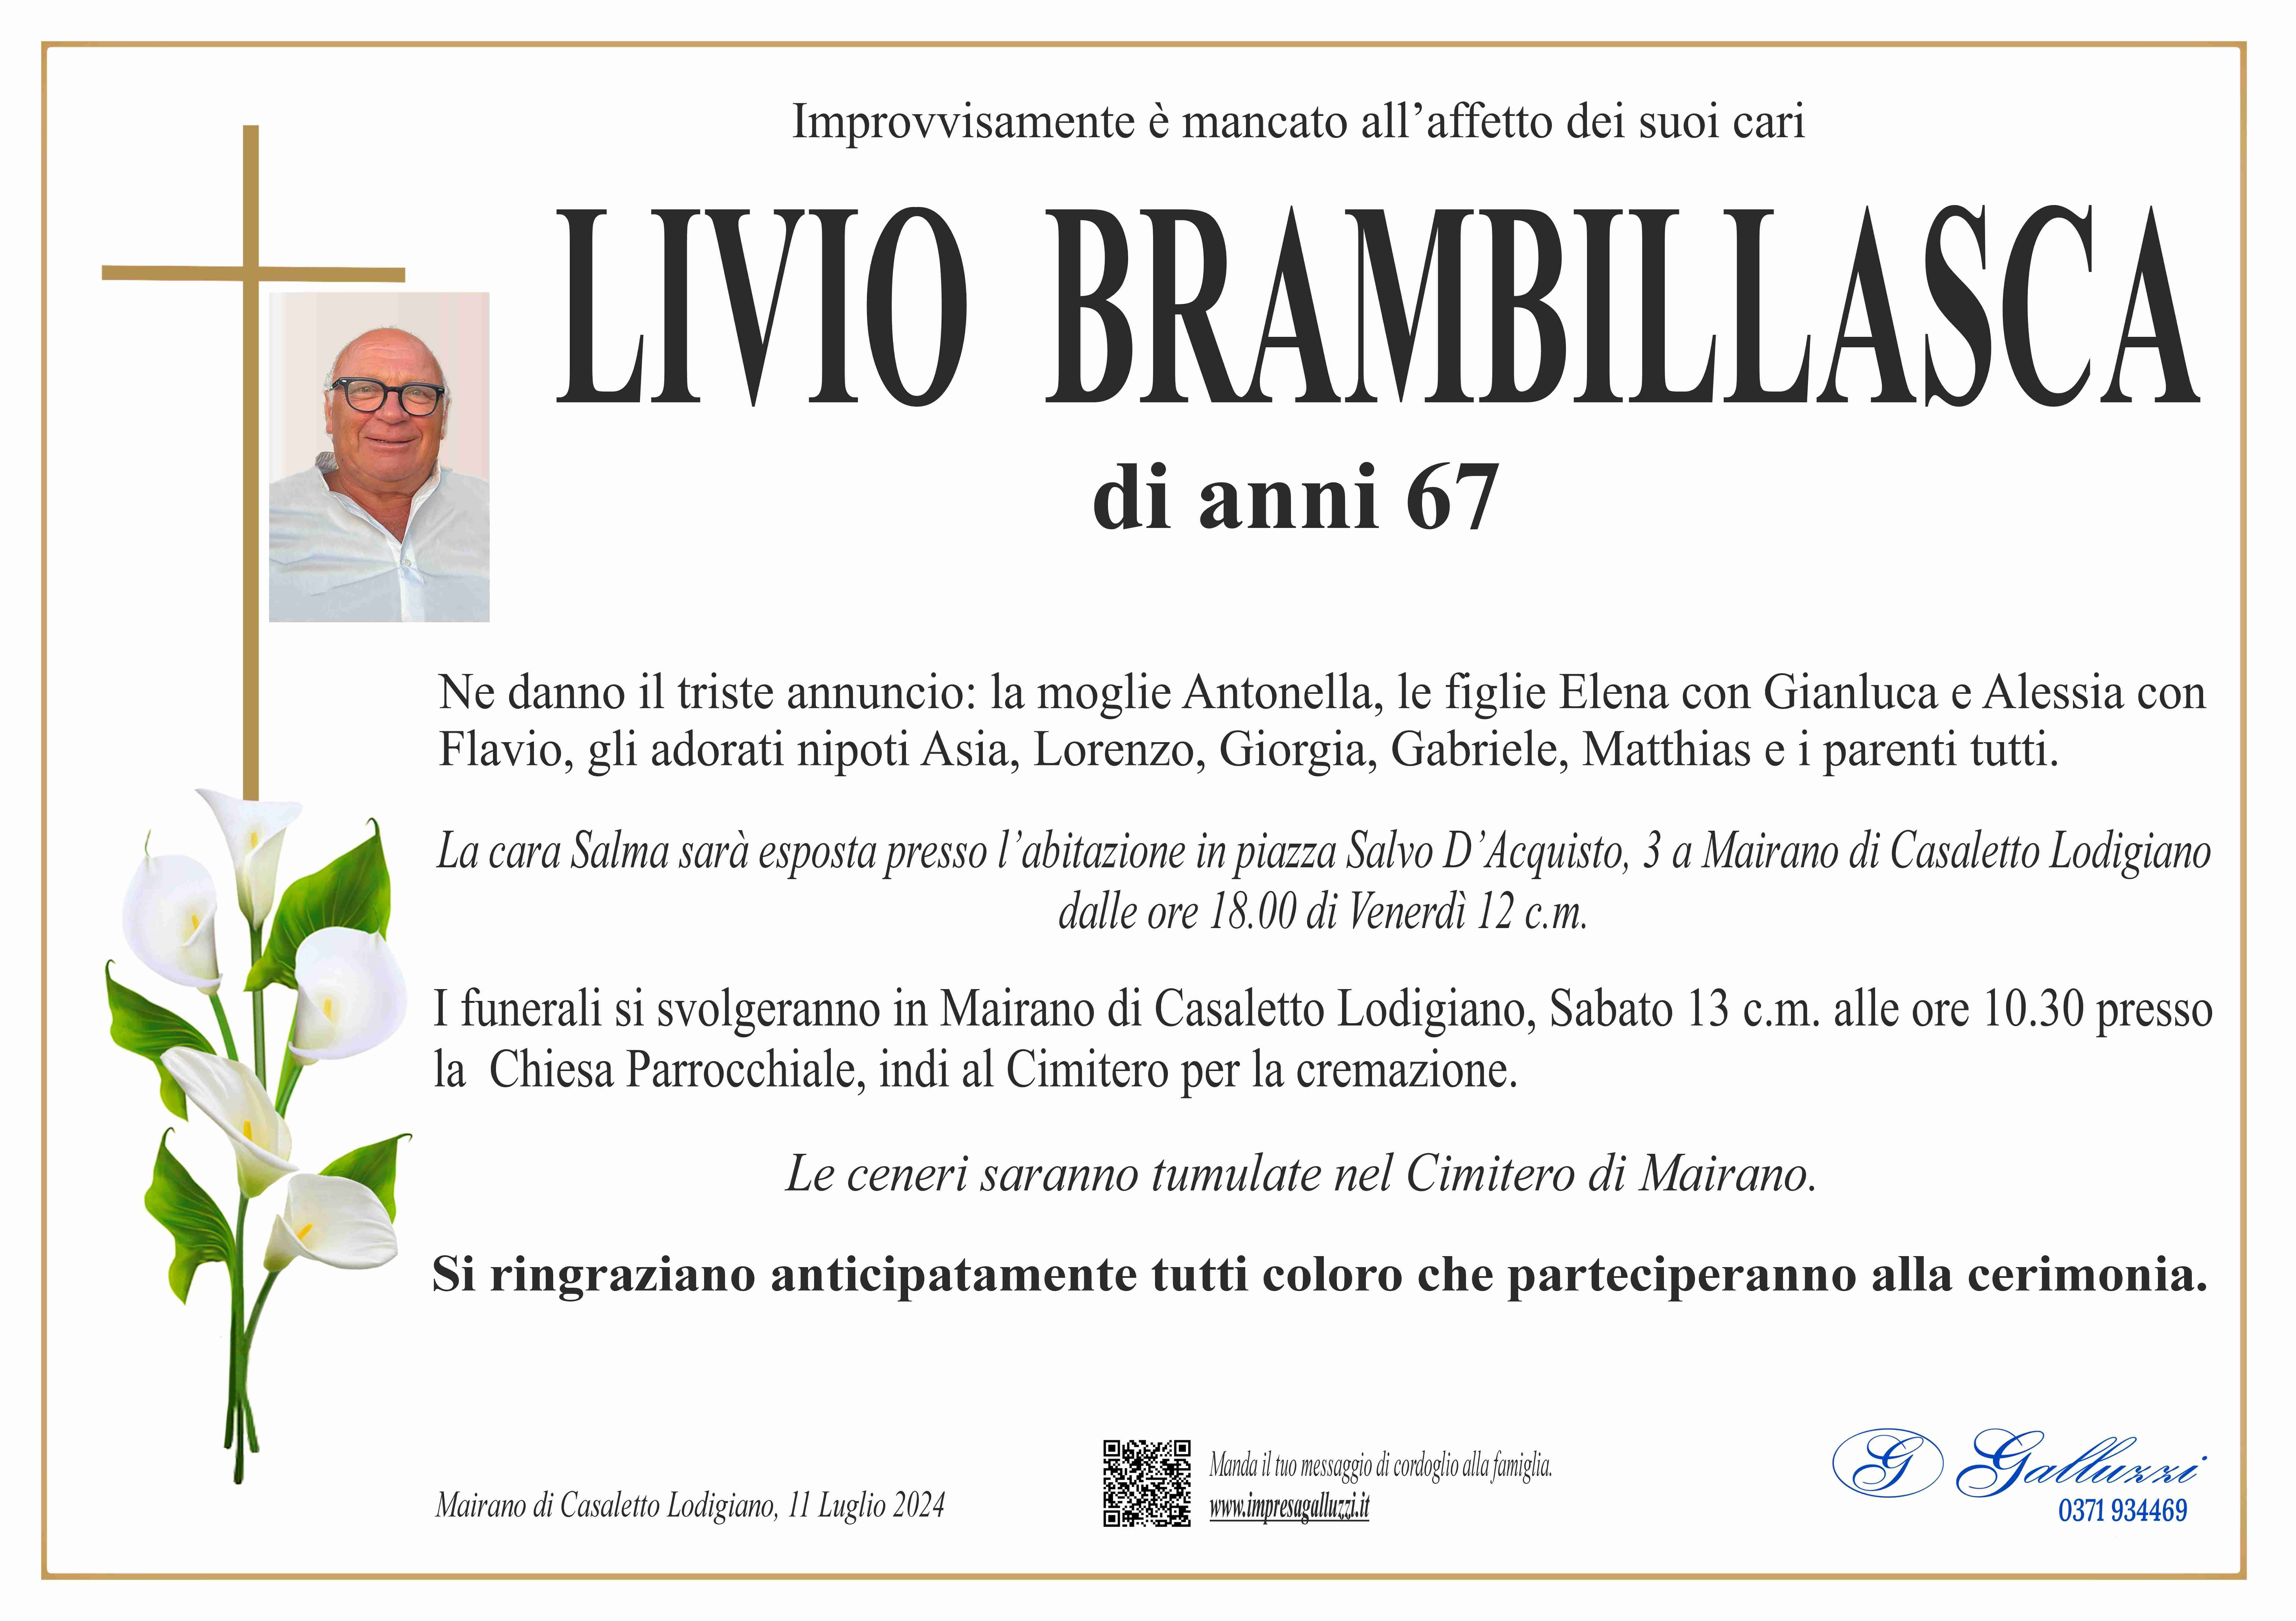 Livio Brambillasca